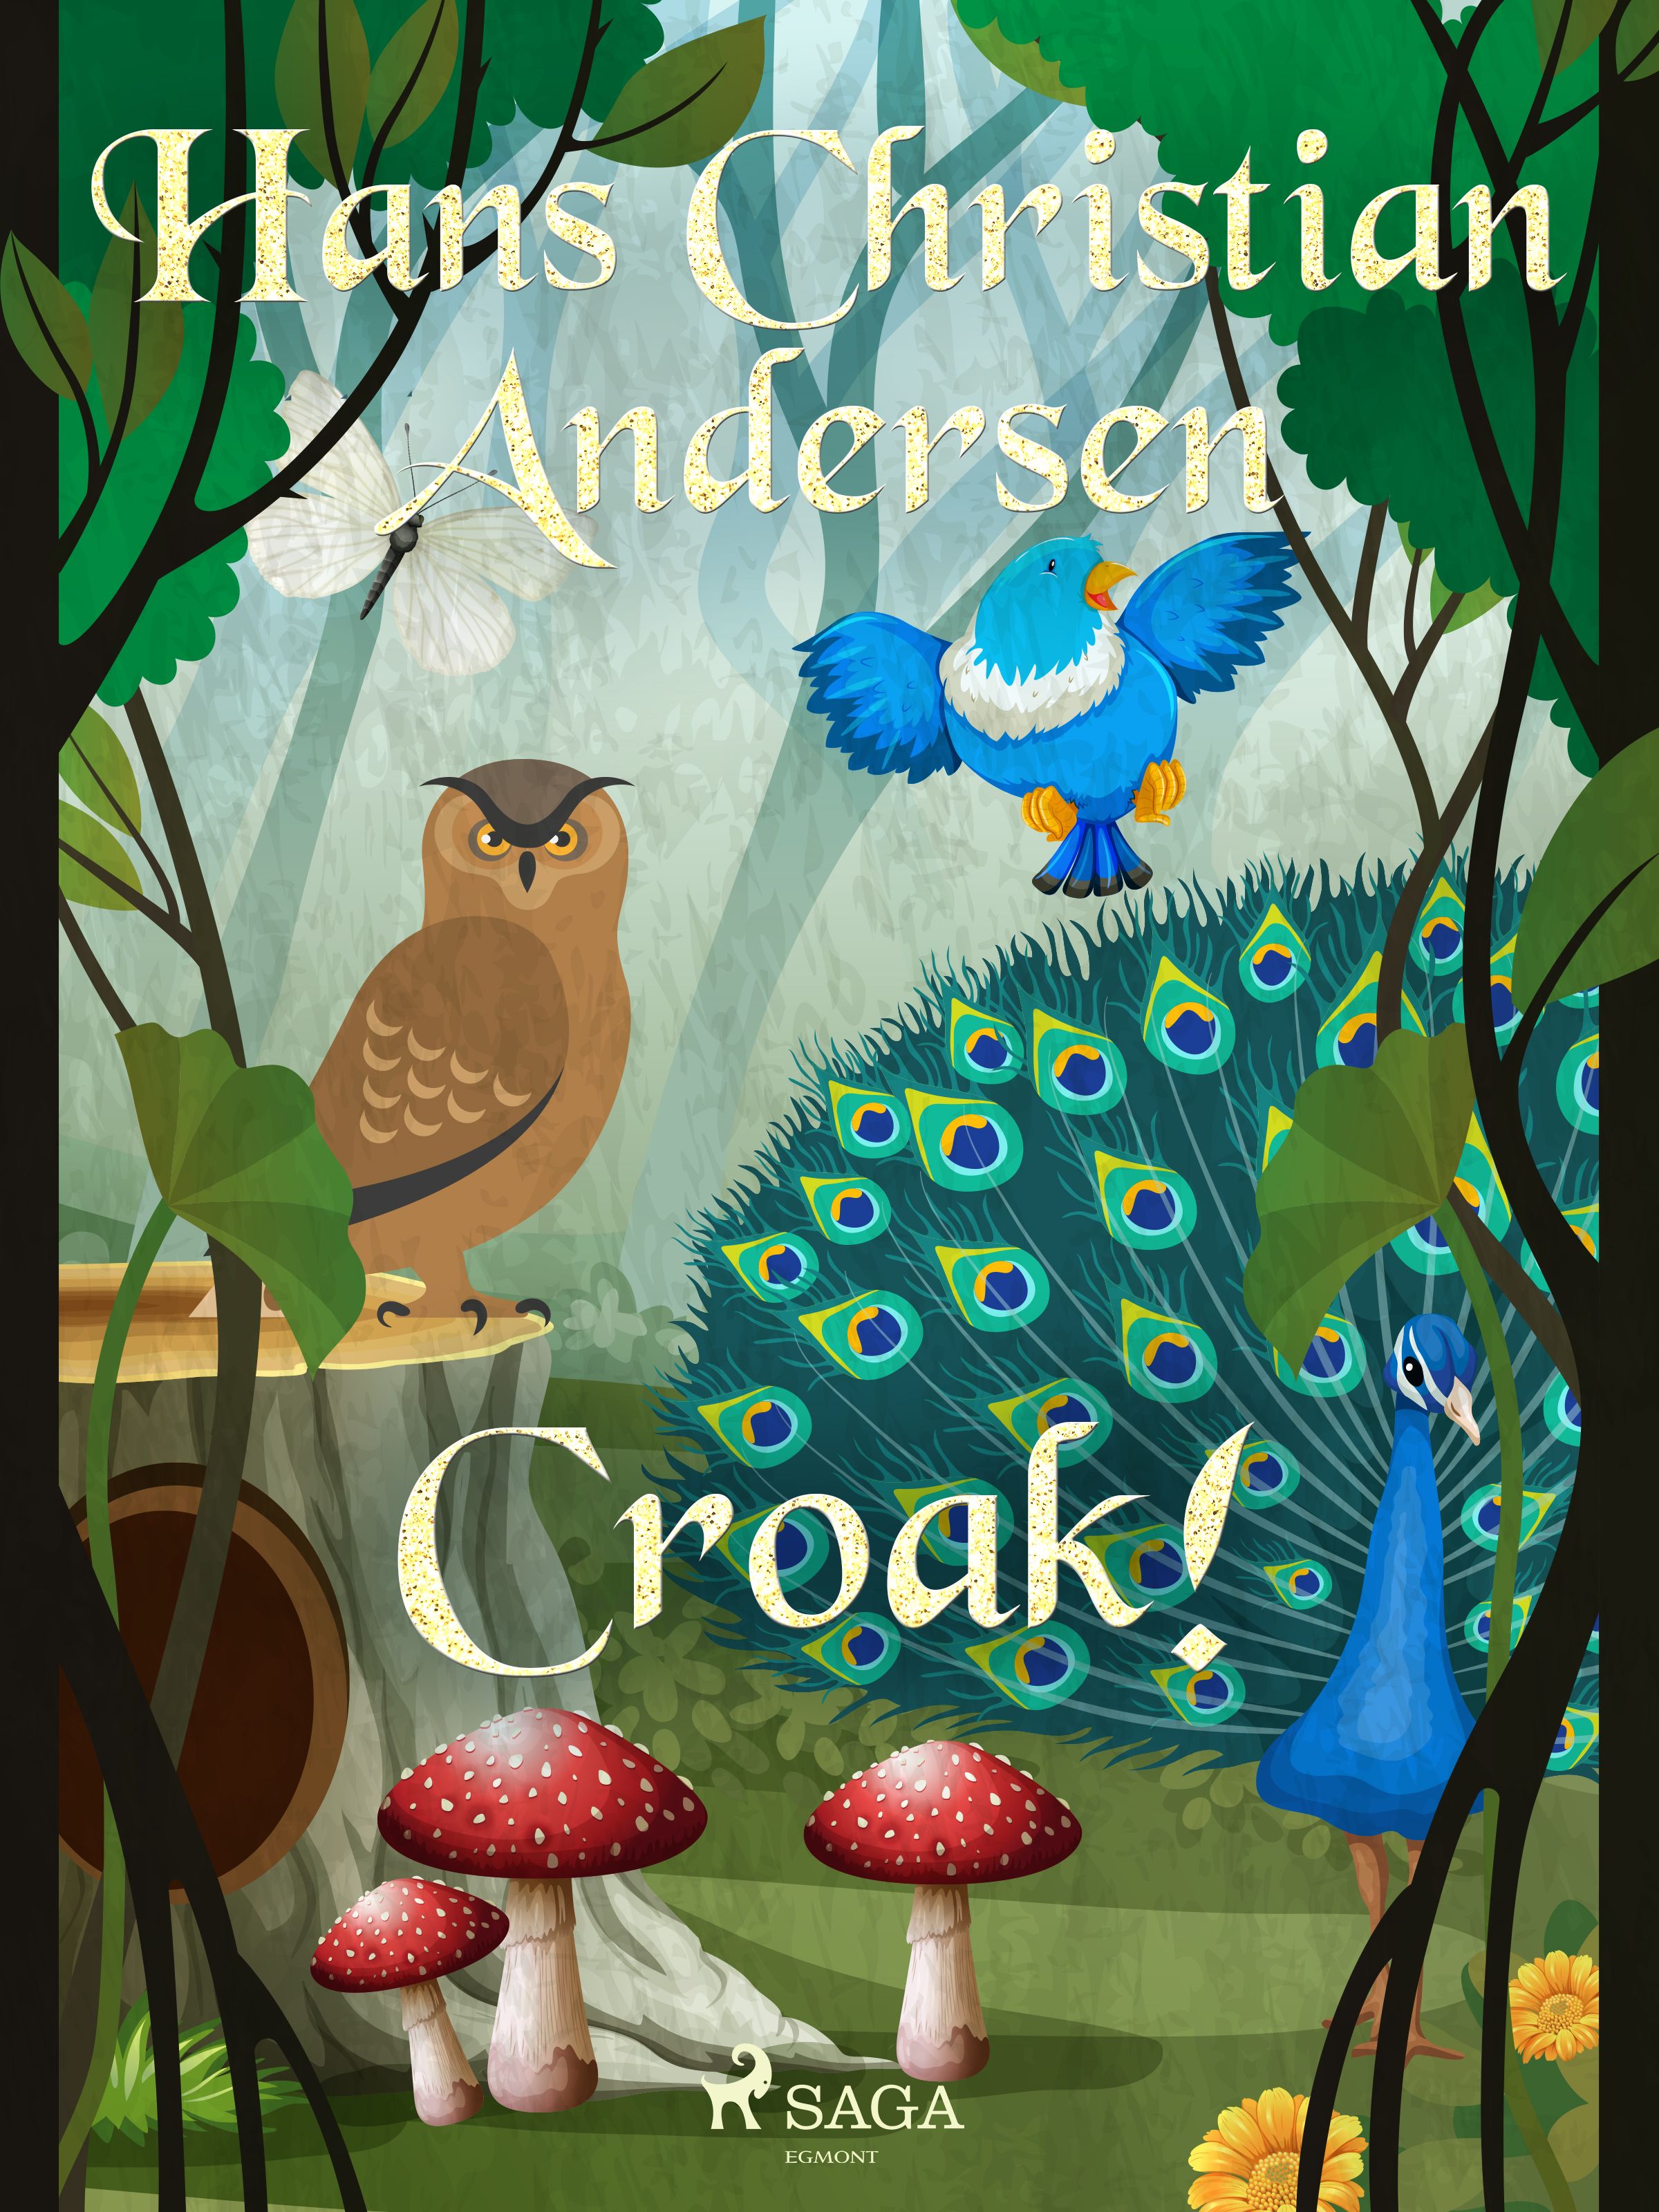 Croak!, e-bog af Hans Christian Andersen